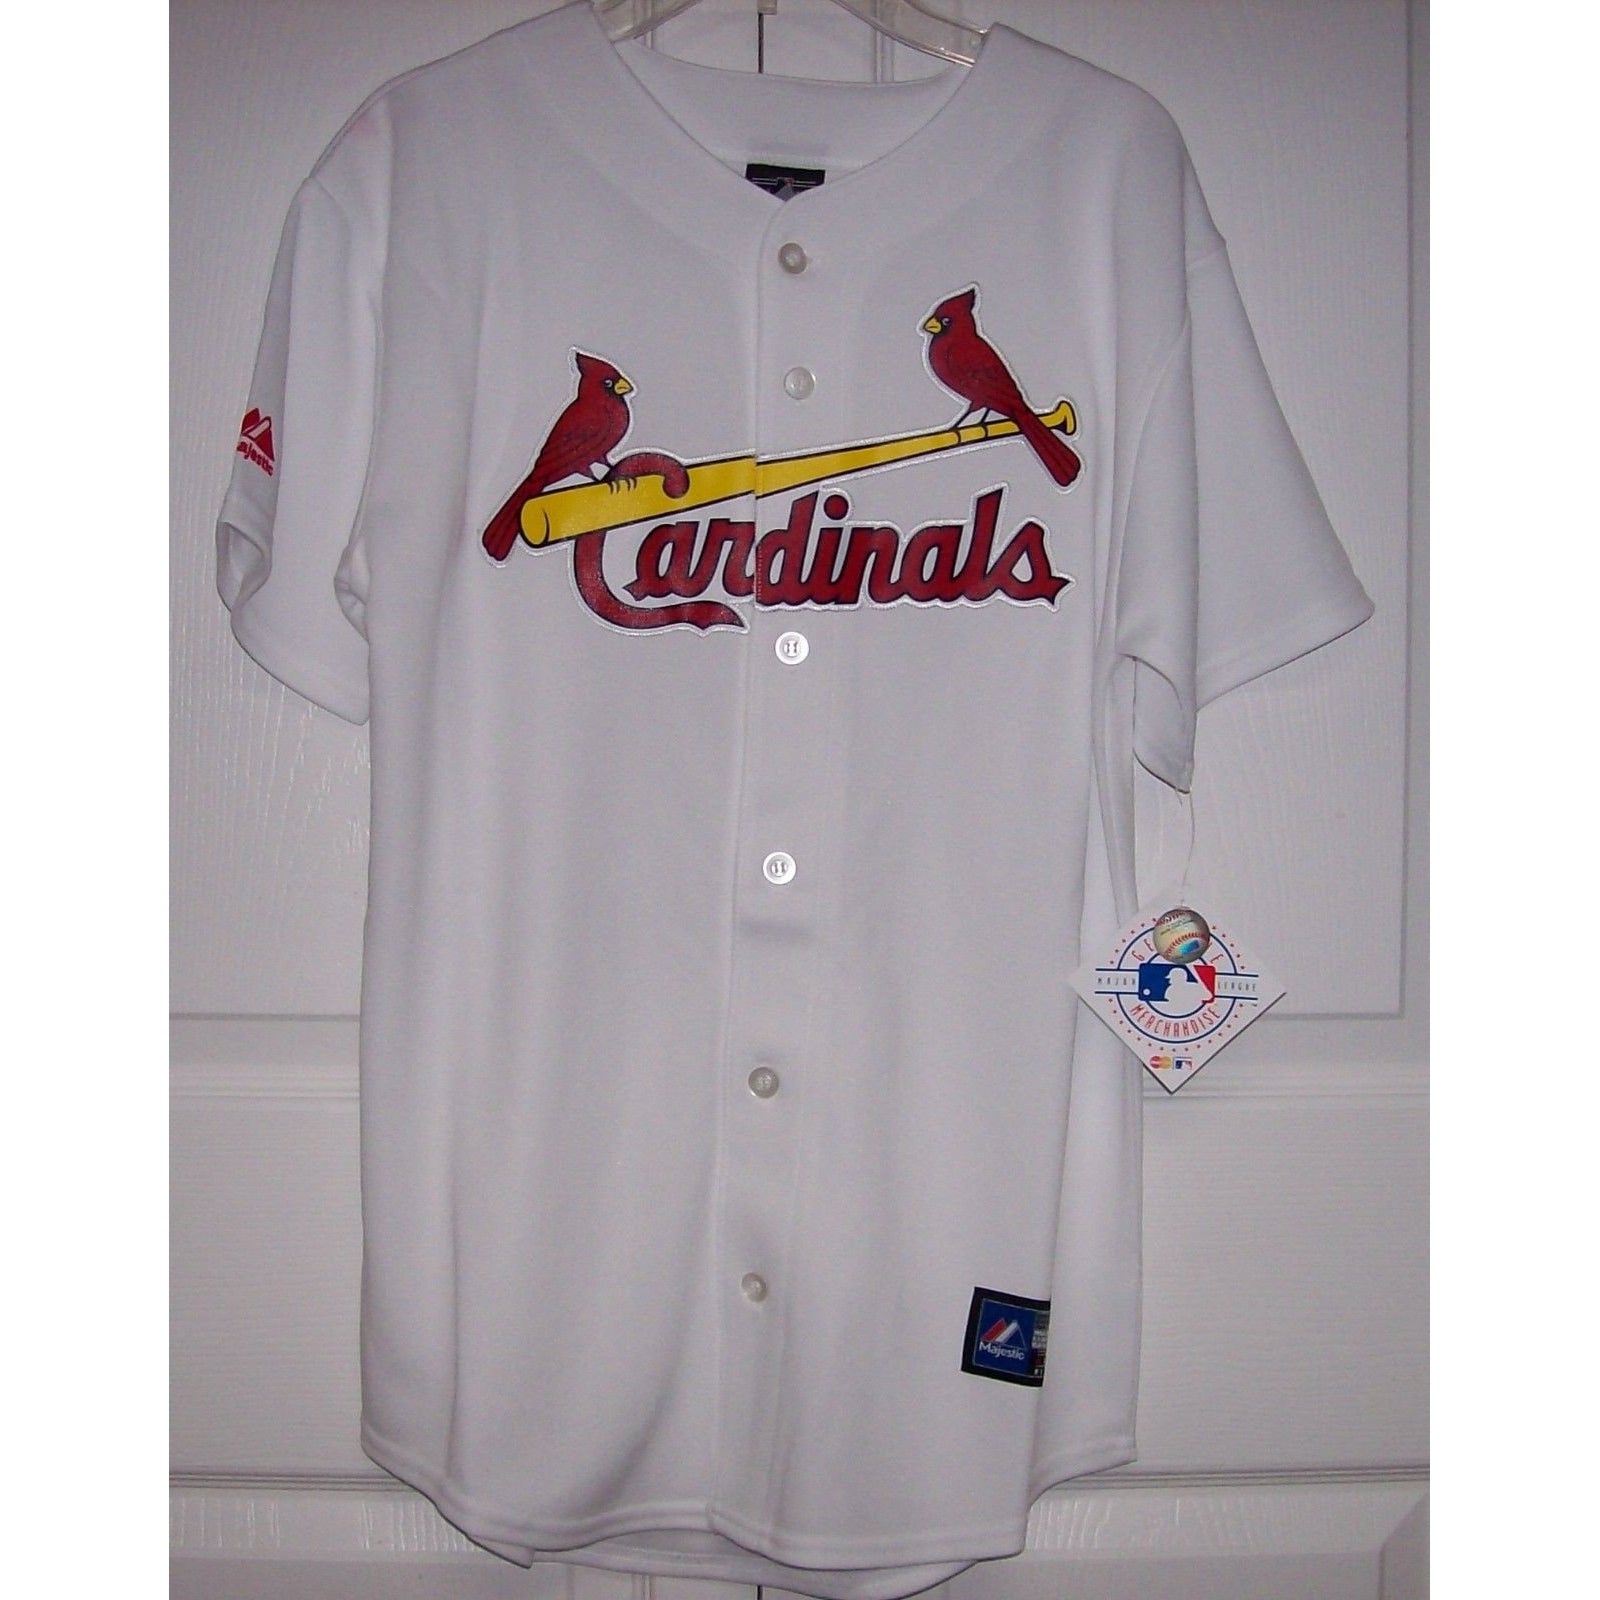 St. Louis Cardinals Gear, Cardinals Merchandise, Cardinals Apparel, Store